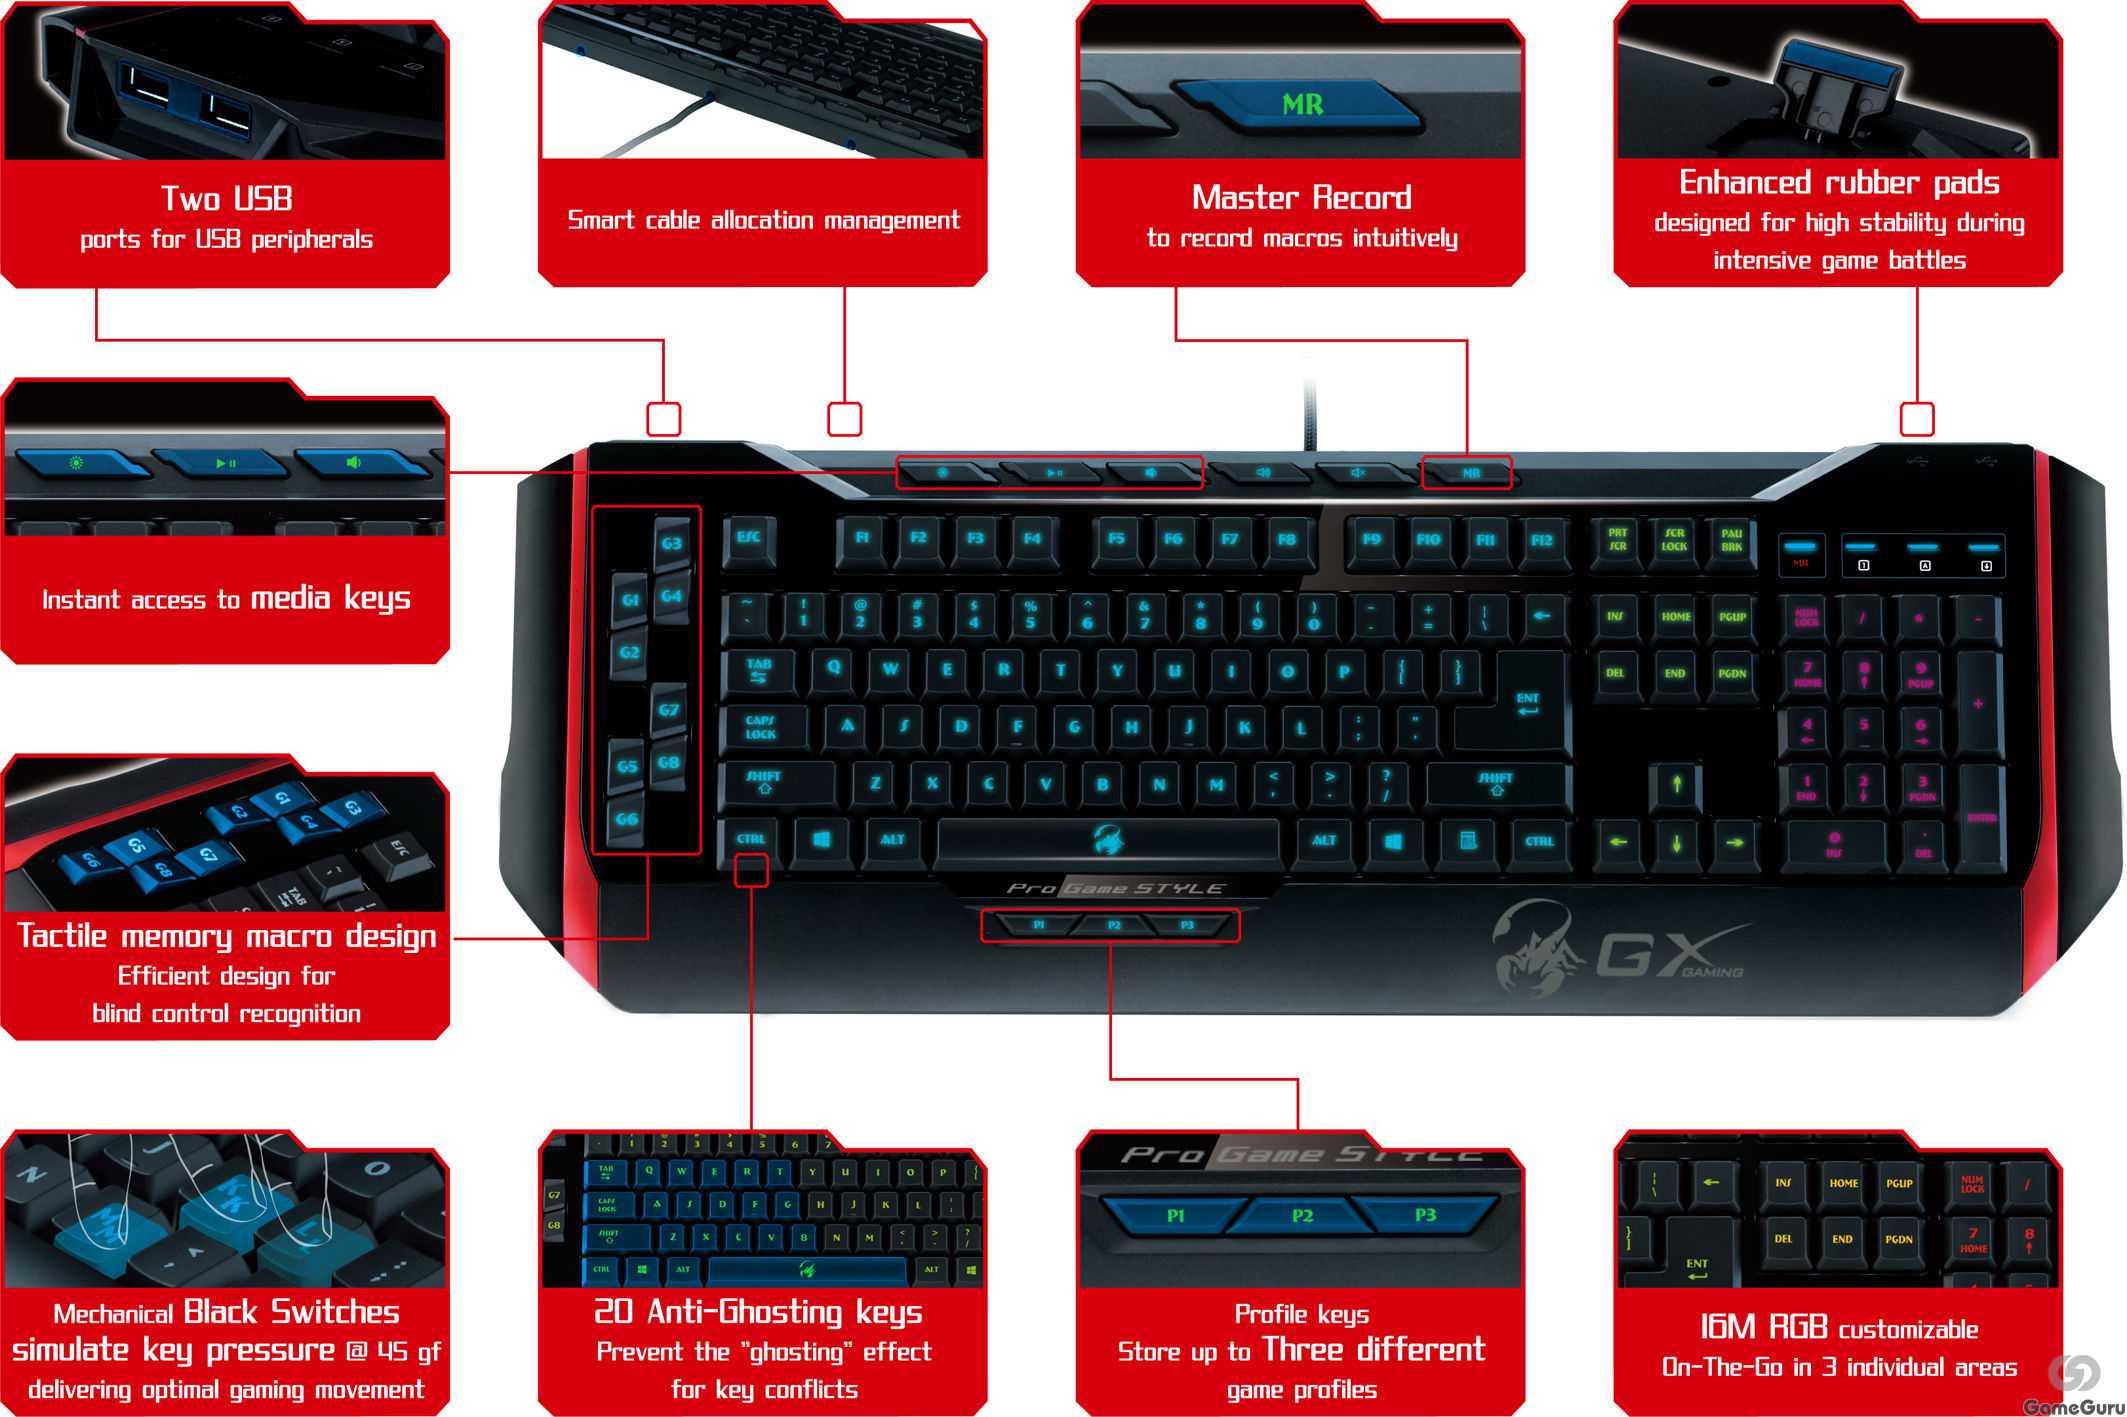 Клавиатура genius gx gaming manticore черный (31310058102) купить от 1279 руб в новосибирске, сравнить цены, отзывы, видео обзоры и характеристики